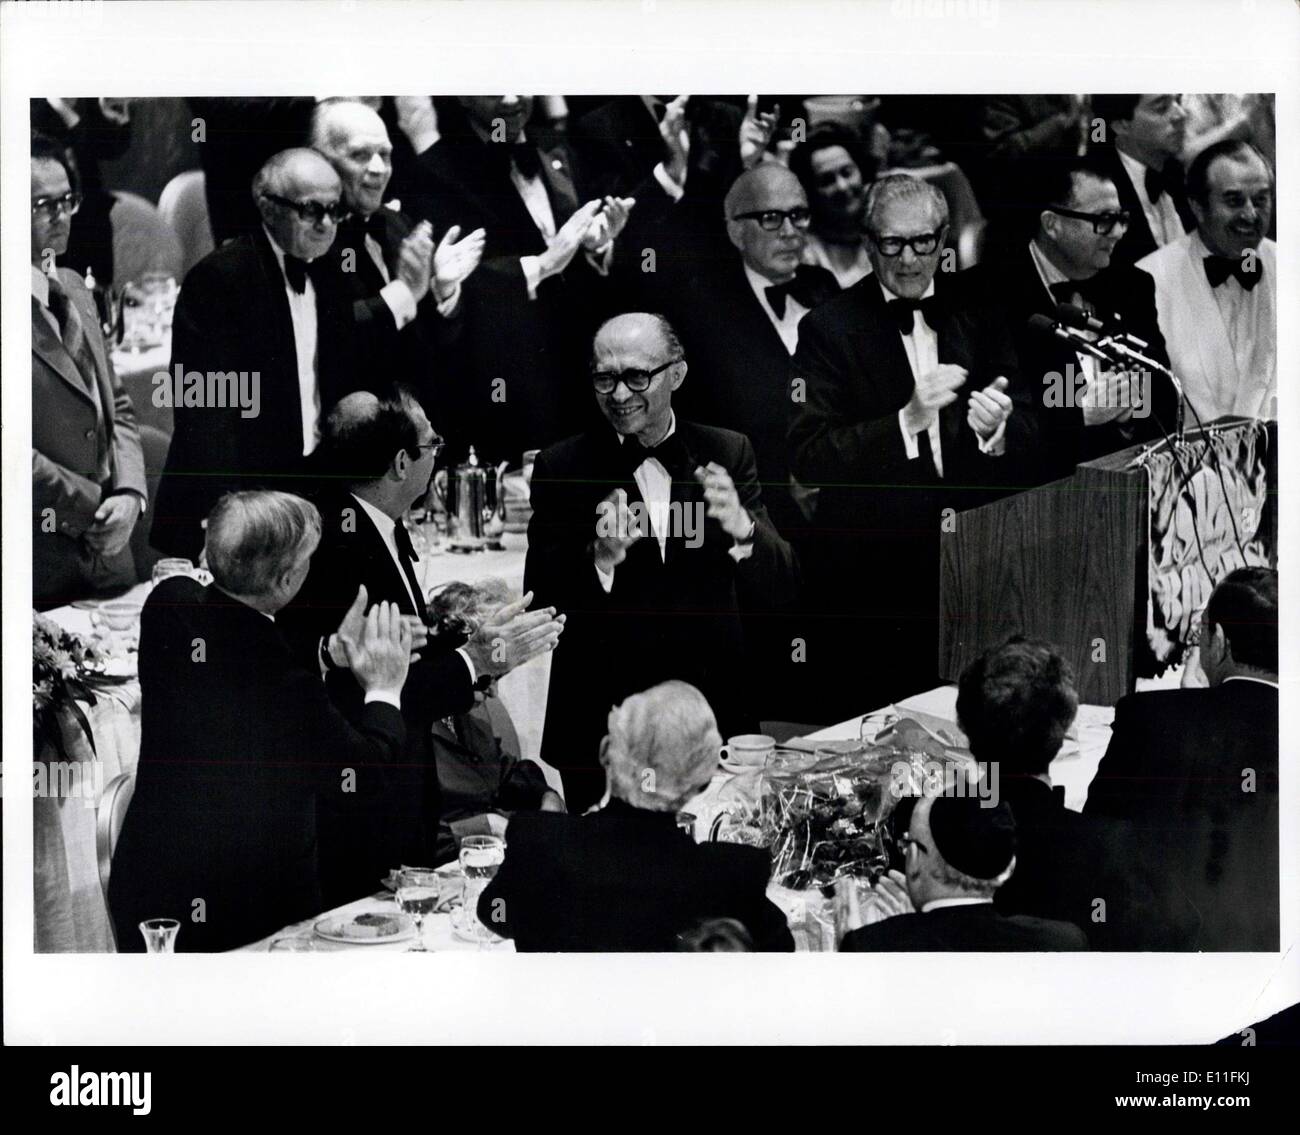 Lug. 21, 1977 - Premier israeliano Menahem Begin parla nello Stato di Israele vincoli nazionali di cena di benvenuto Waldorf Astoria. Foto Stock